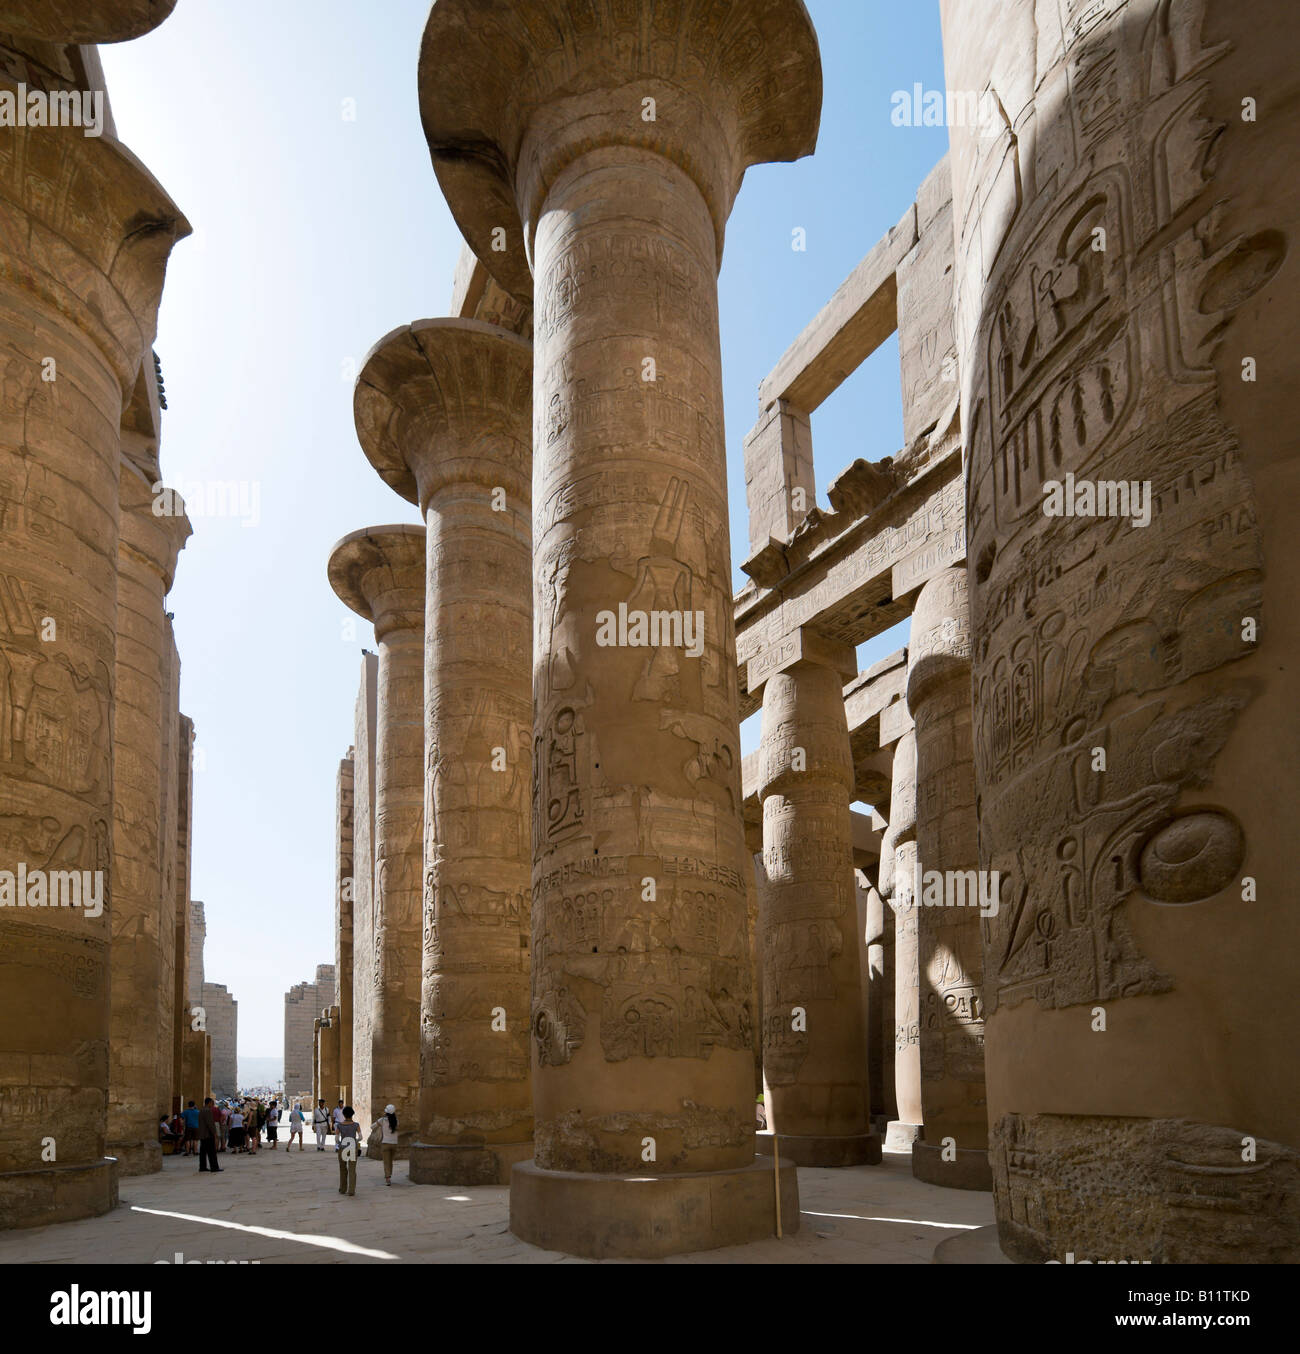 Piliers dans la salle hypostyle, de la Cité parlementaire d'Amon, Temple de Karnak, Louxor, vallée du Nil, l'Egypte Banque D'Images